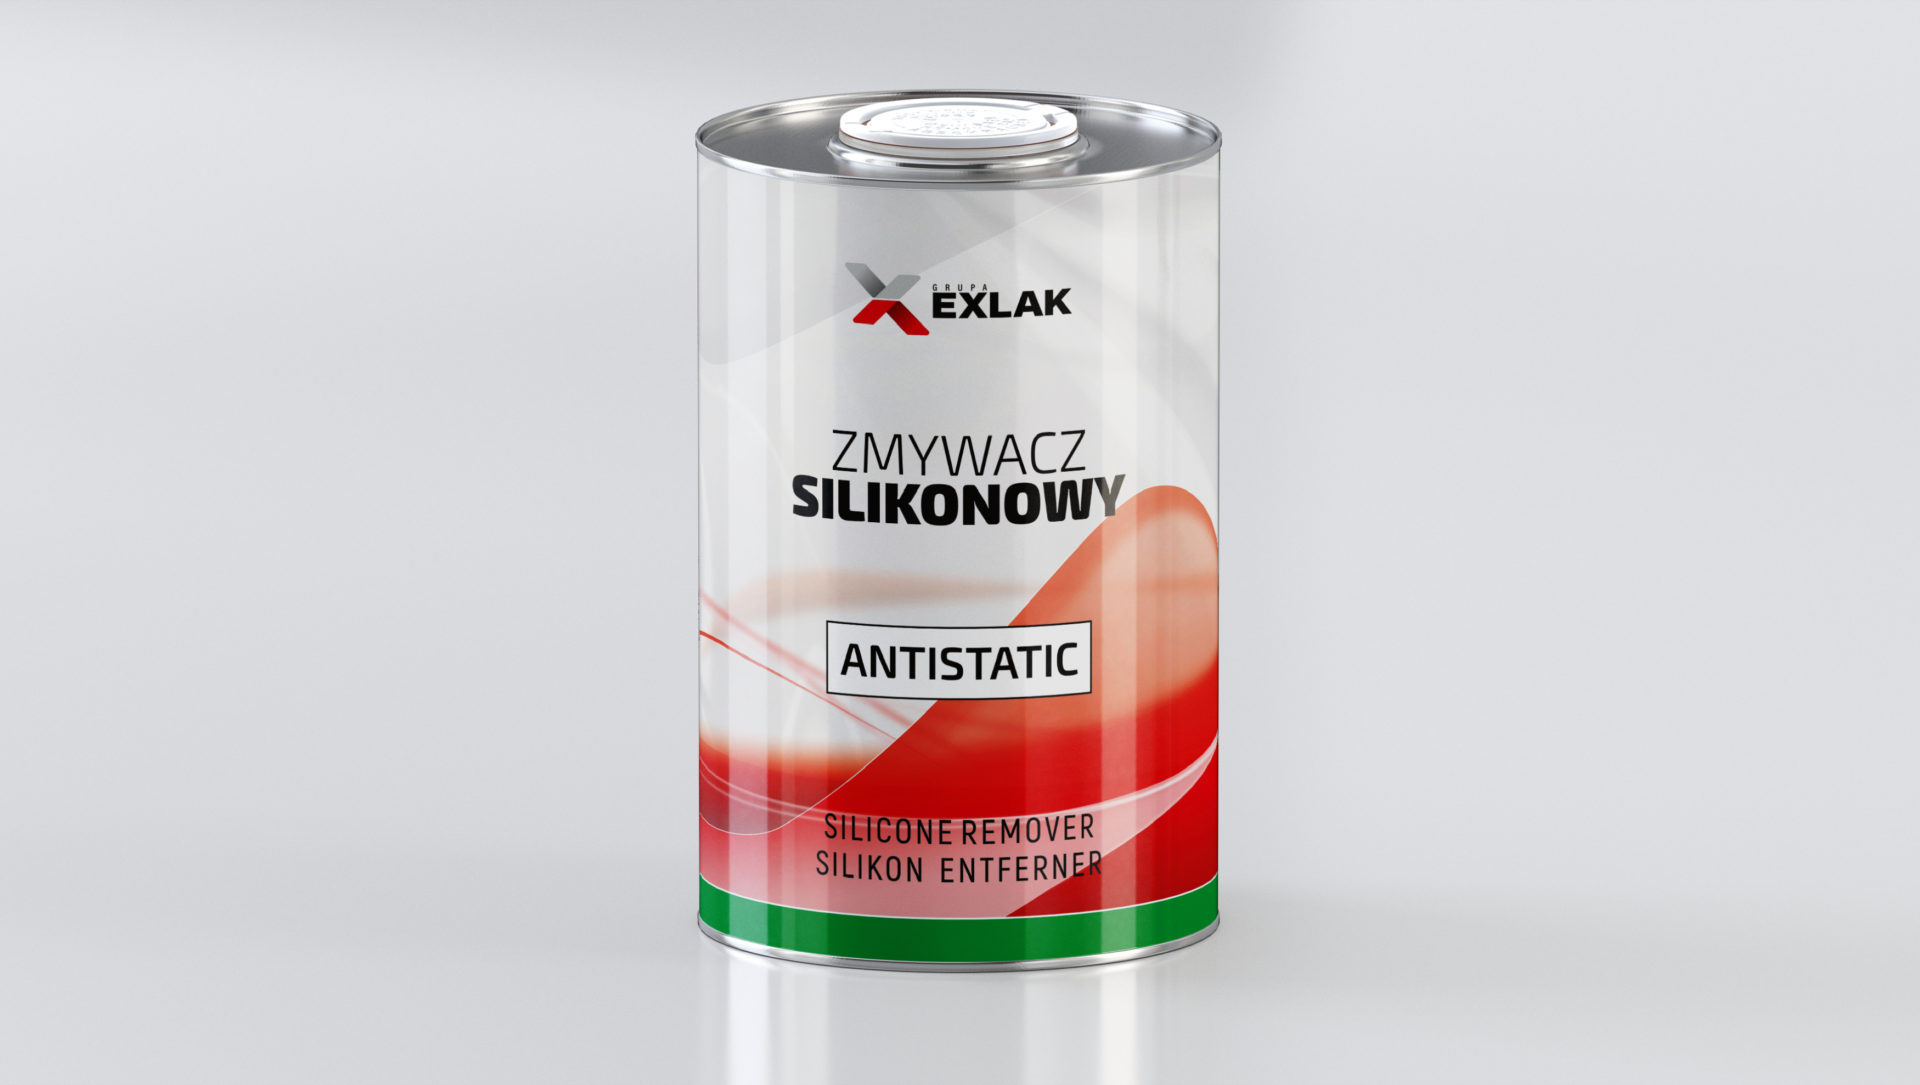 Antistatic silicone remover - Grupa Exlak